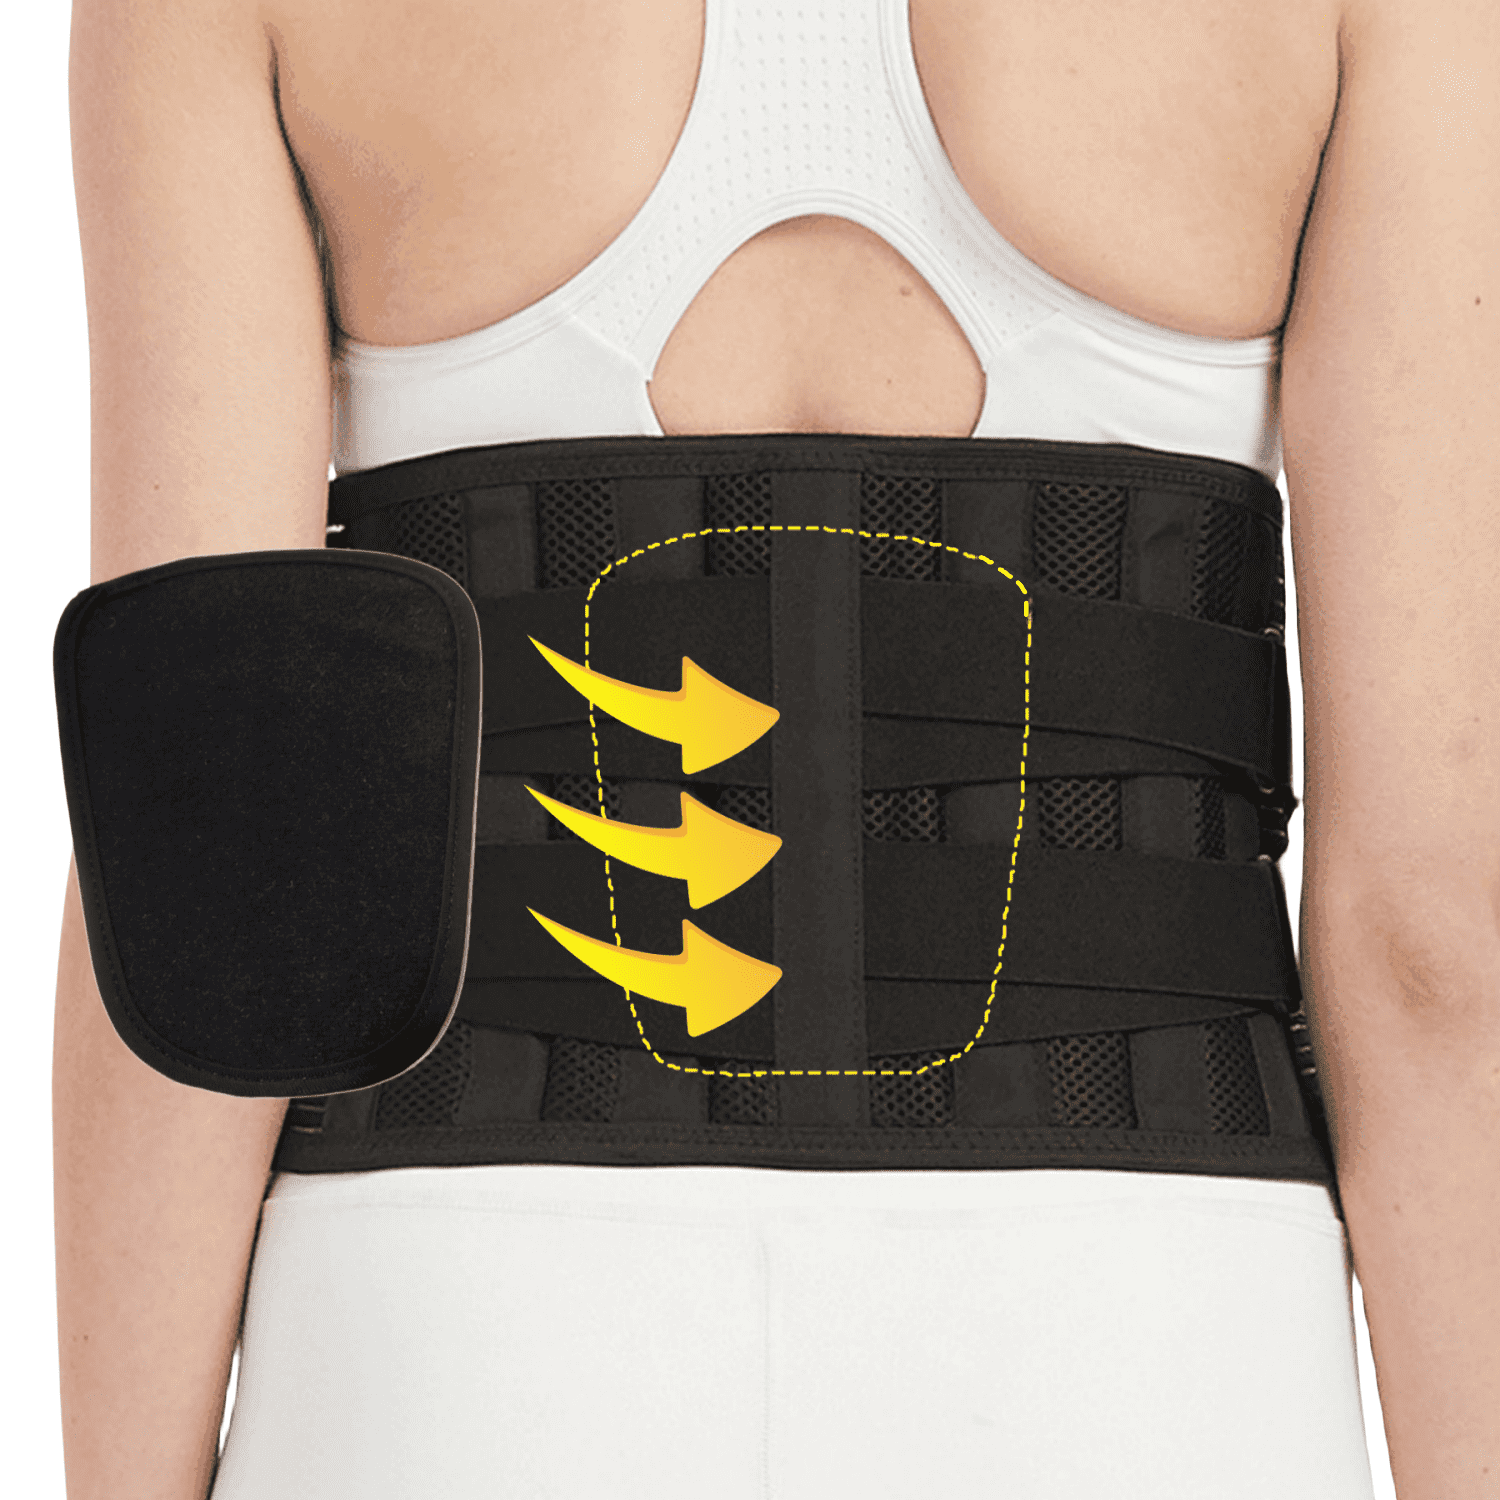 Neoprene Waist Support Lower Back Pain Belt Brace - Velcro